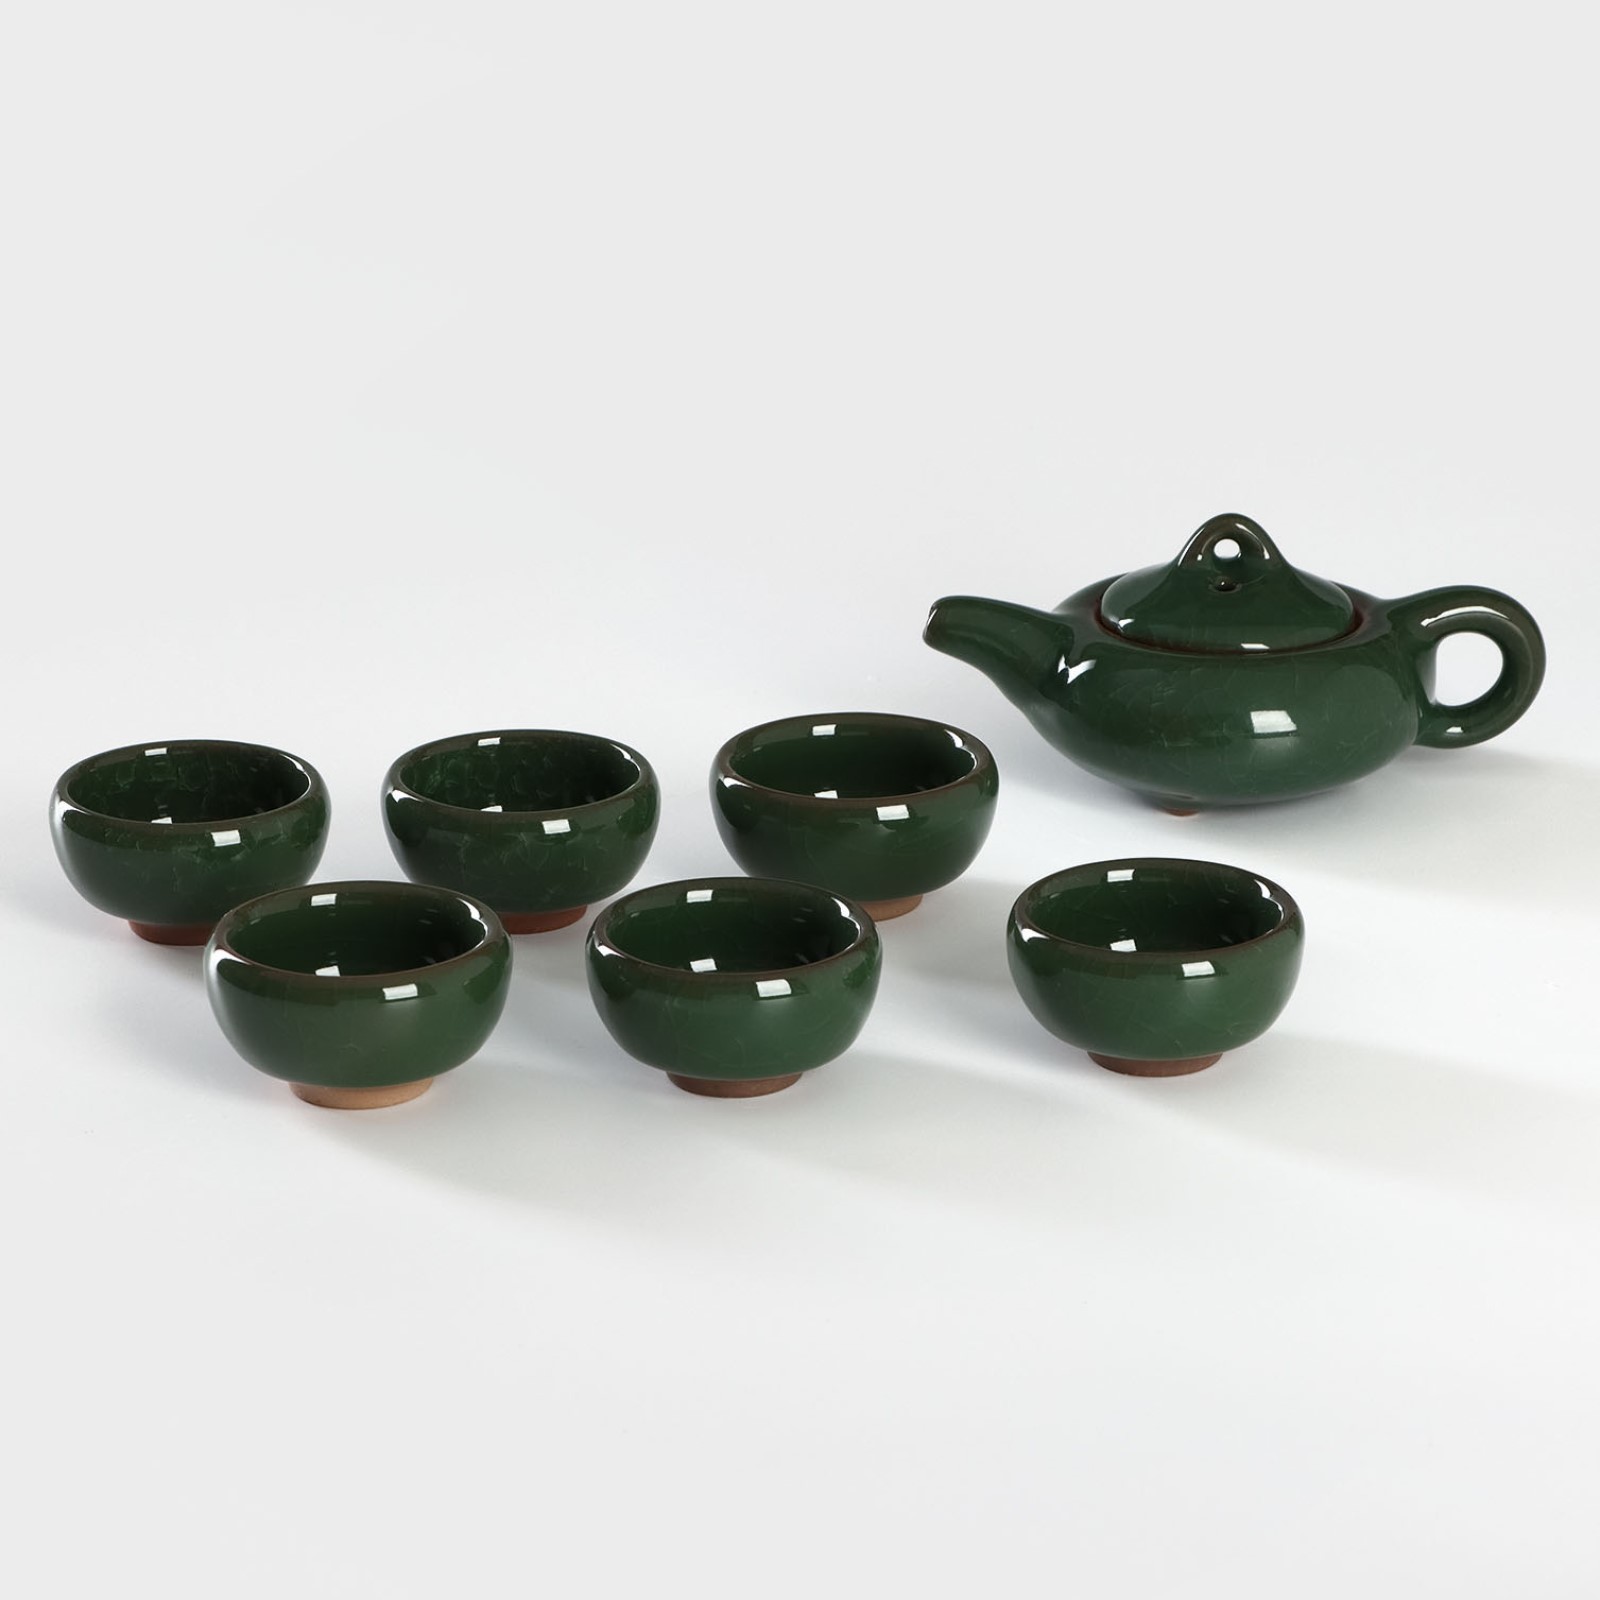 Набор для чайной церемонии керамический «Лунный камень», 7 предметов:чайник 150 мл, 6 пиал 50 мл, цвет зелёный (835867) - Купить по цене от550.00 руб.